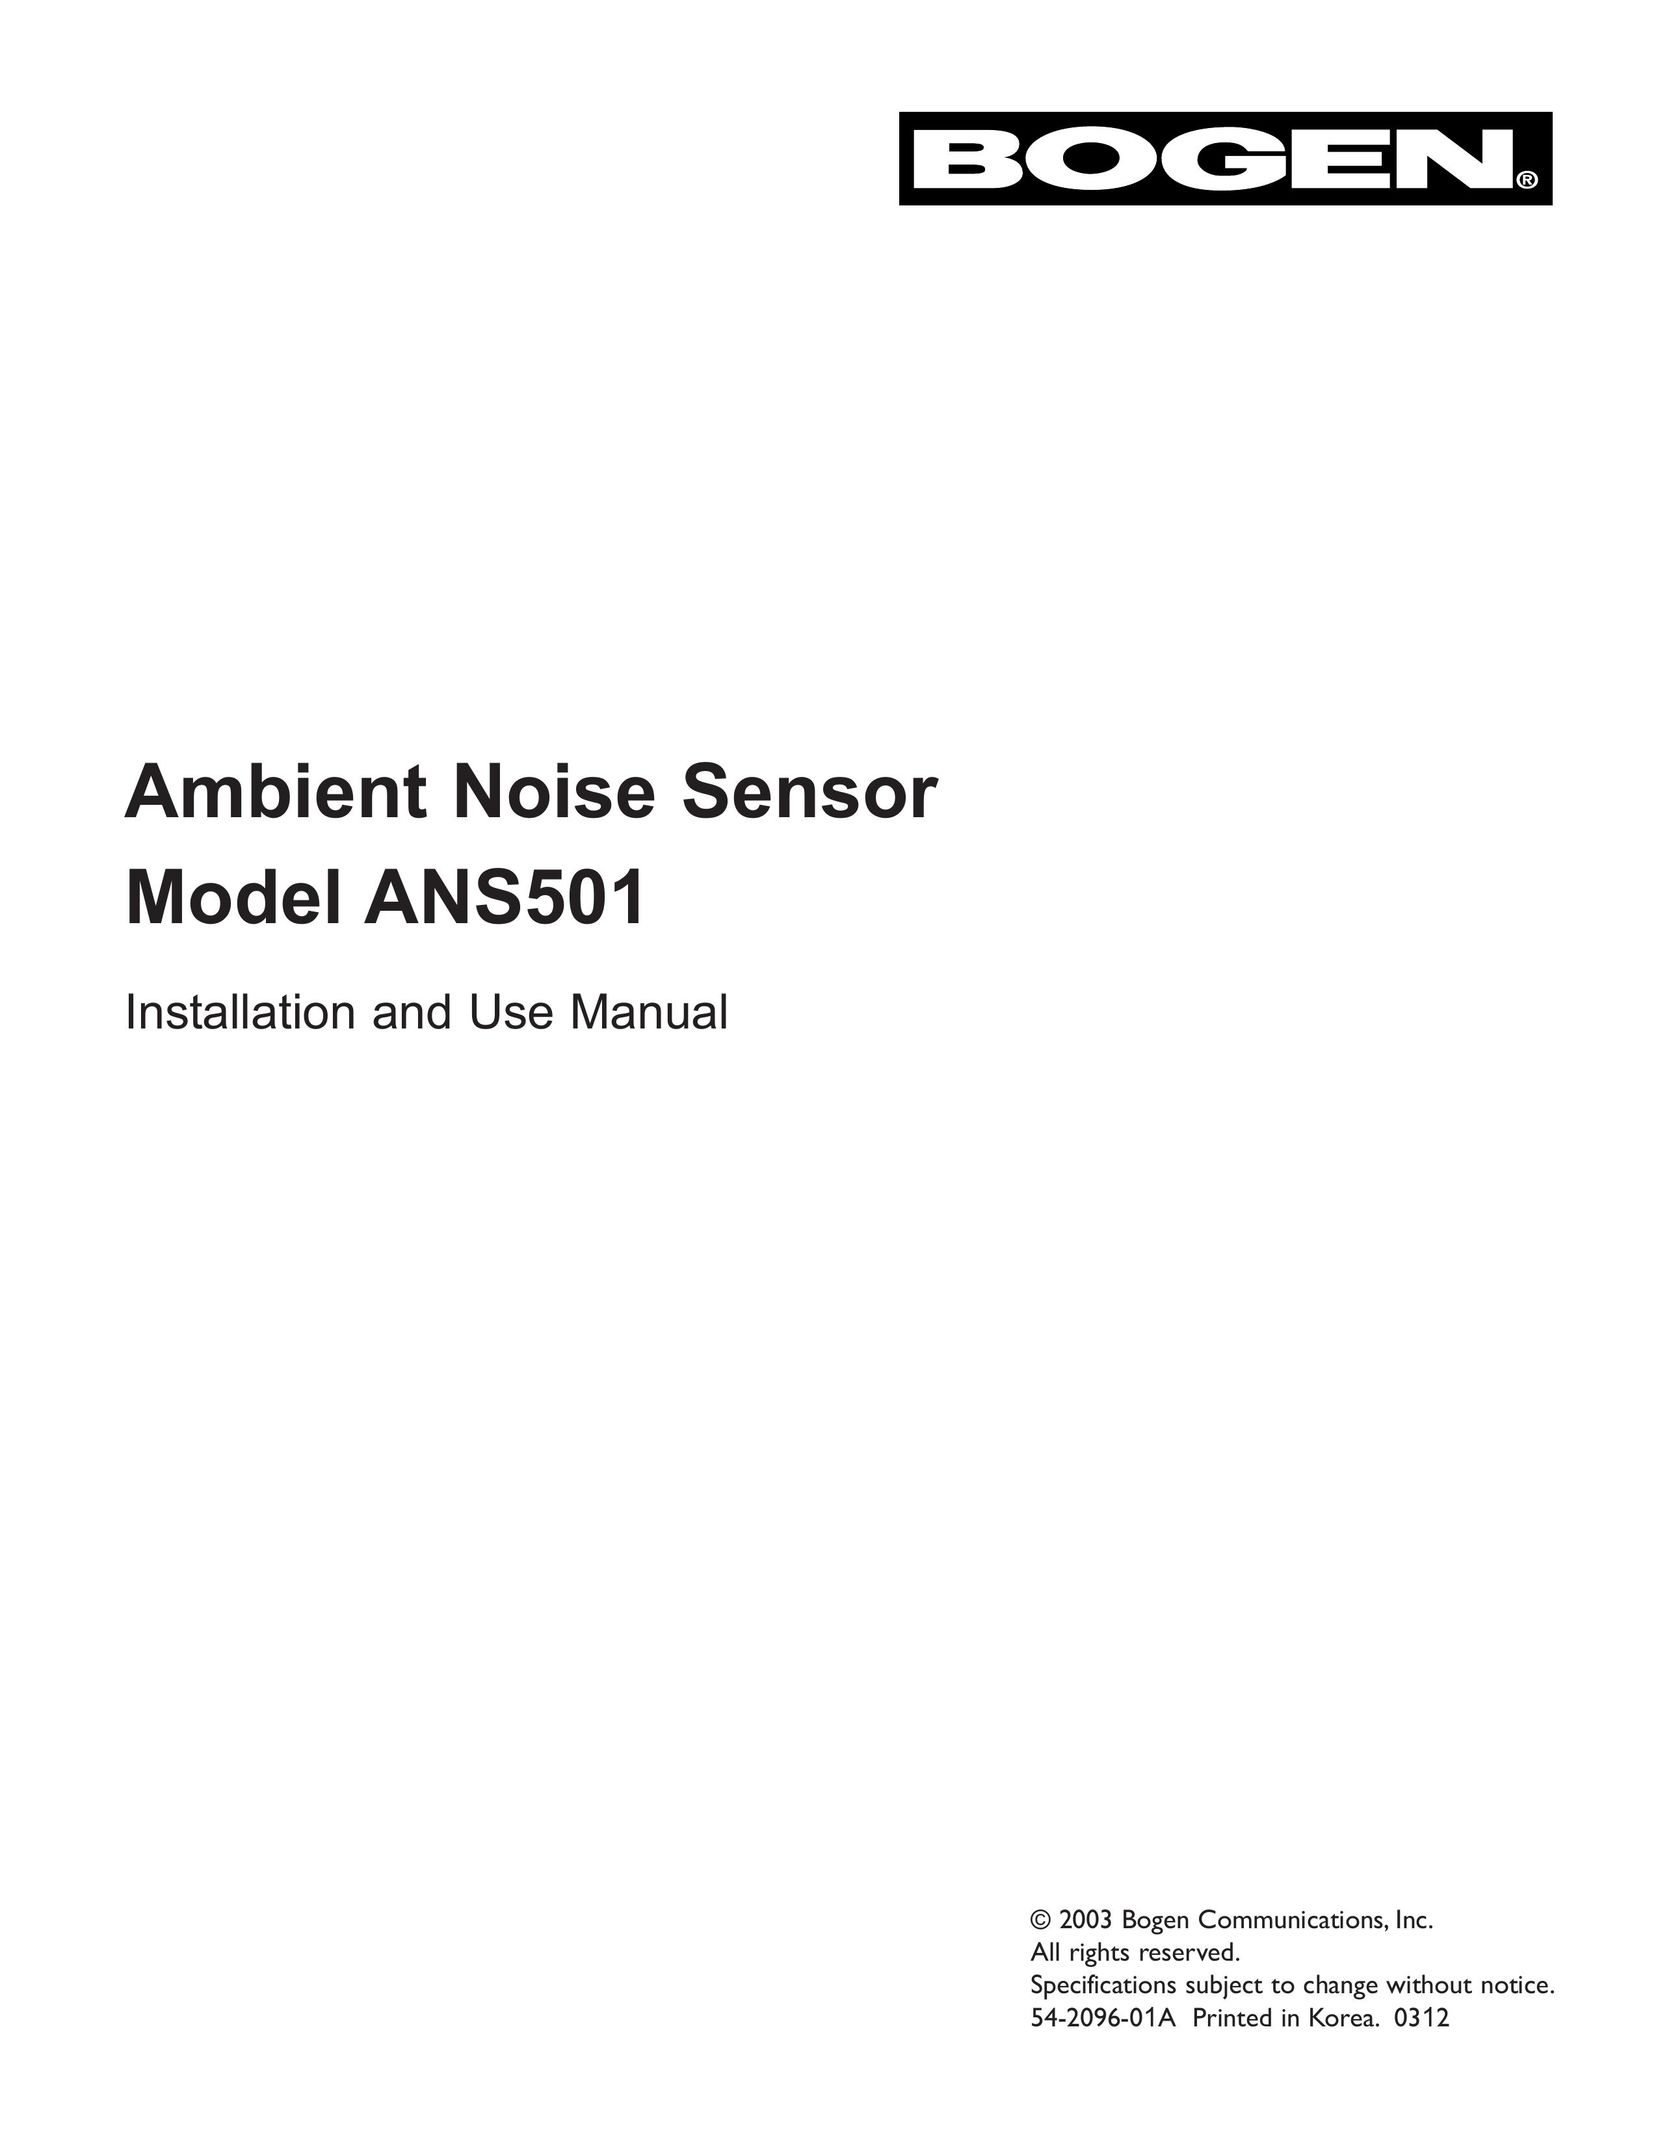 Bogen ANS501 Noise Reduction Machine User Manual